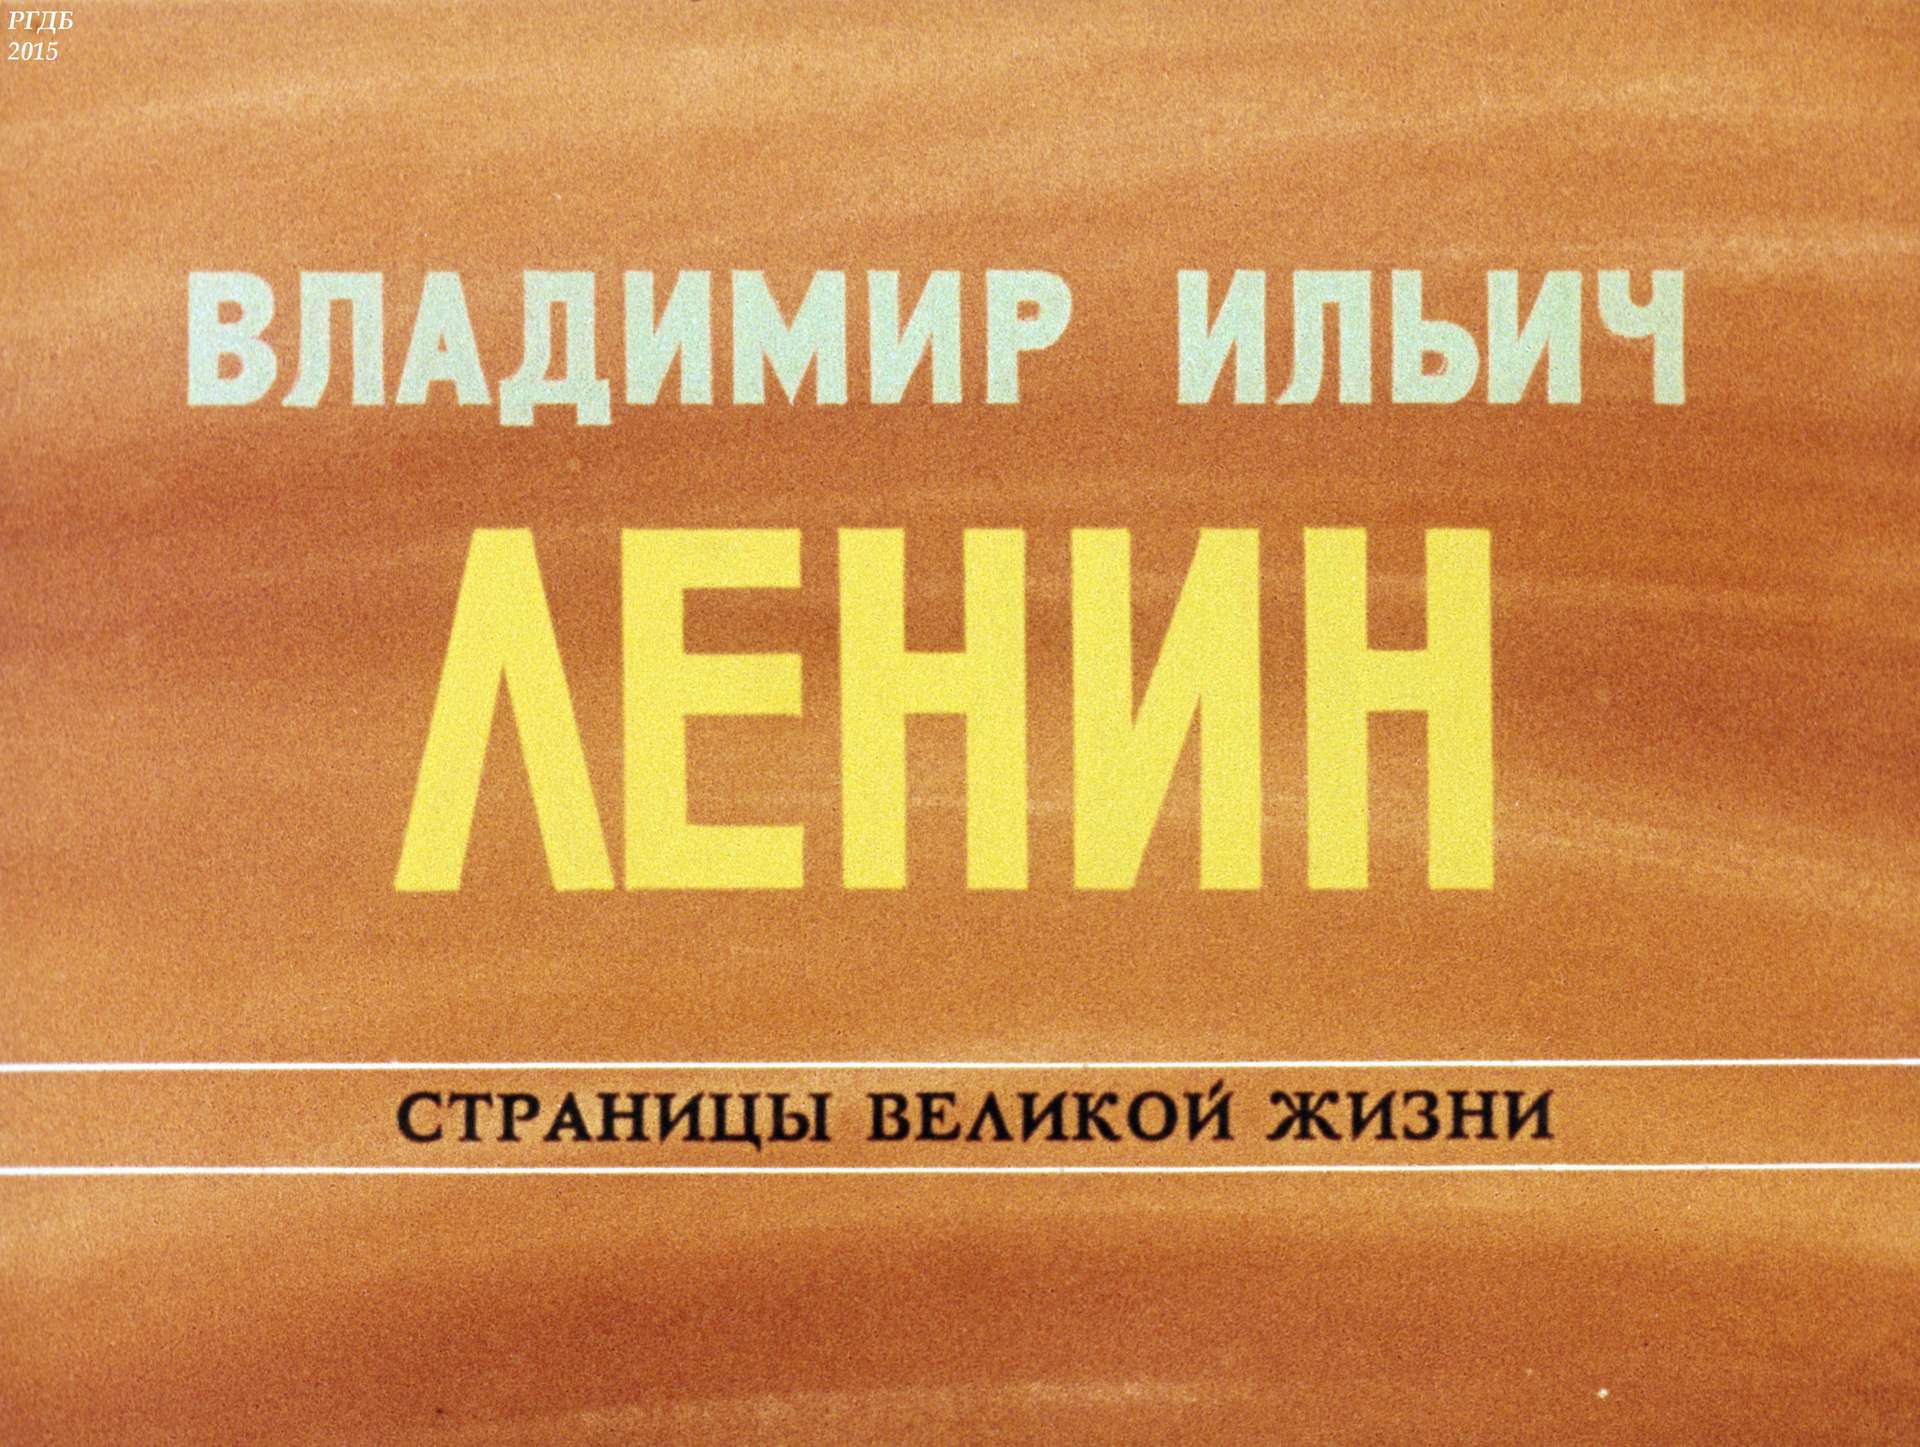 Владимир Ильич Ленин: страницы великой жизни. Ч. 11: Во главе обороны социалистического отечества (1918-1920)